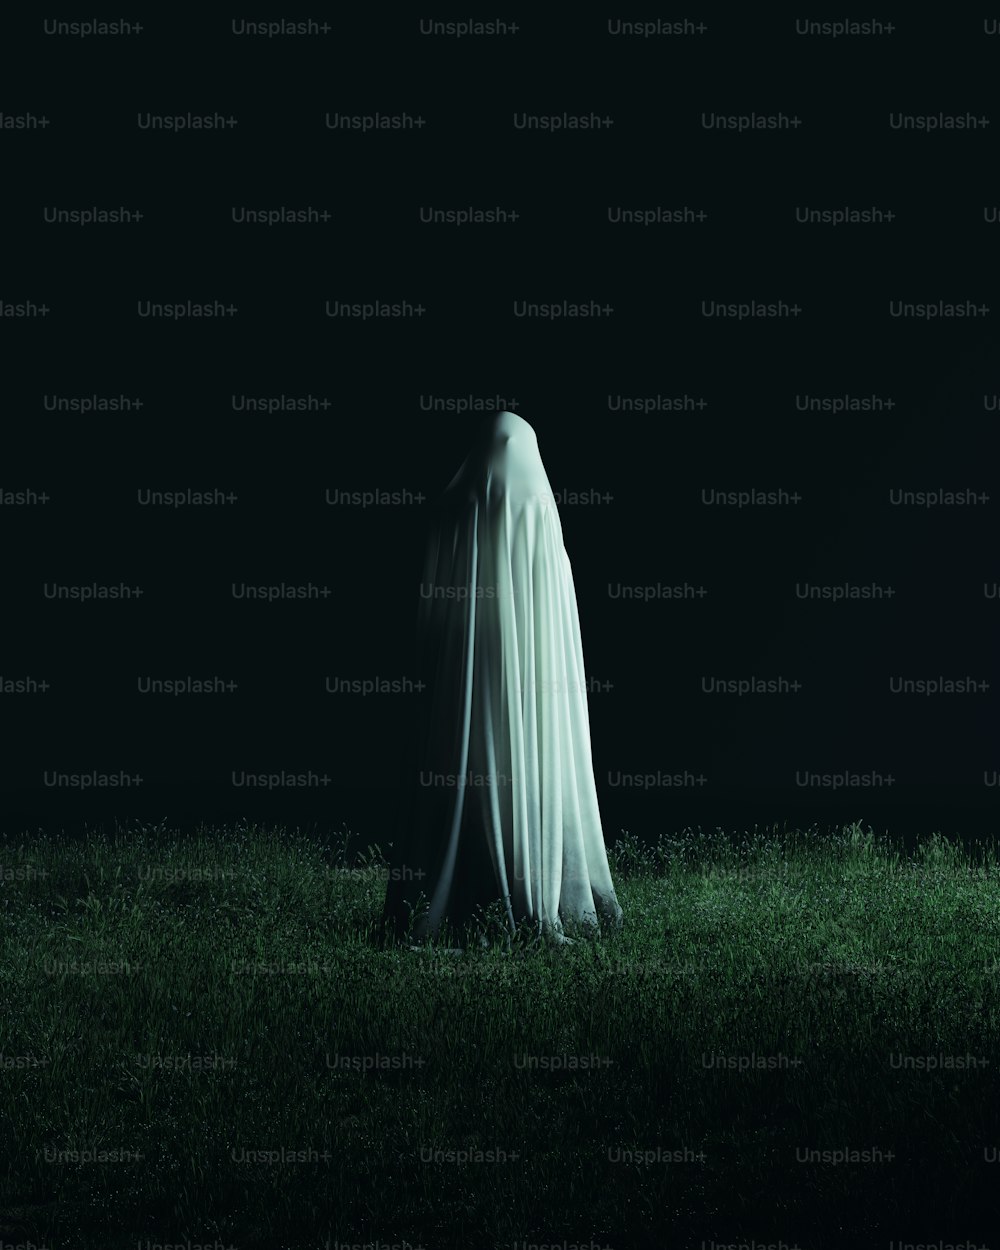 Un fantasma fantasmal parado en la hierba por la noche